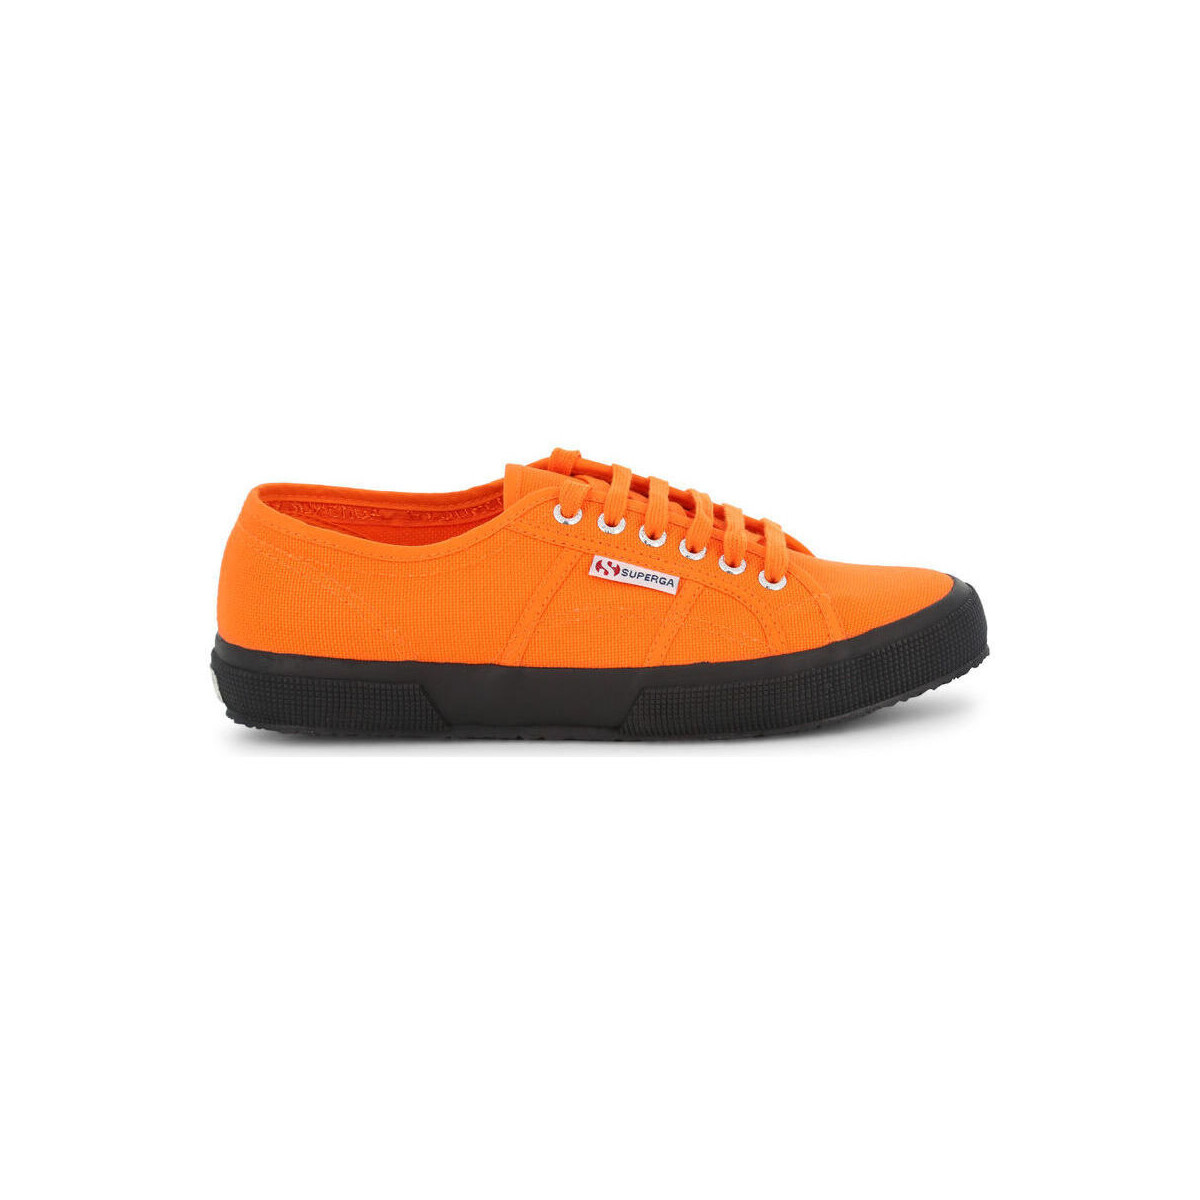 Παπούτσια Sneakers Superga - 2750-CotuClassic-S000010 Orange